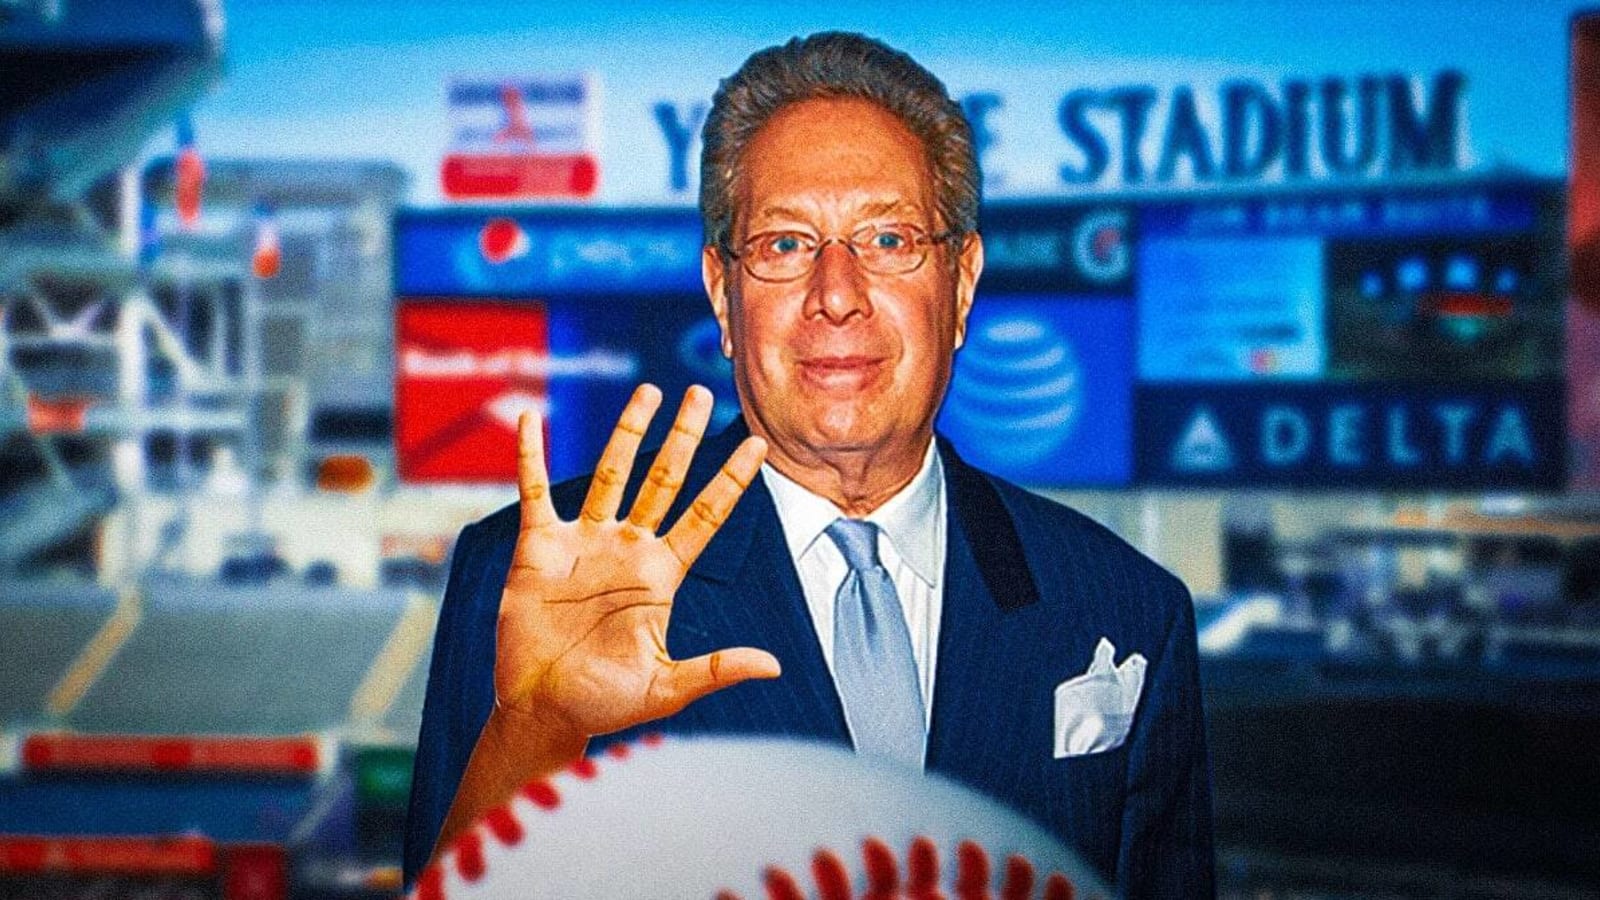 Yankees’ legendary announcer John Sterling is retiring